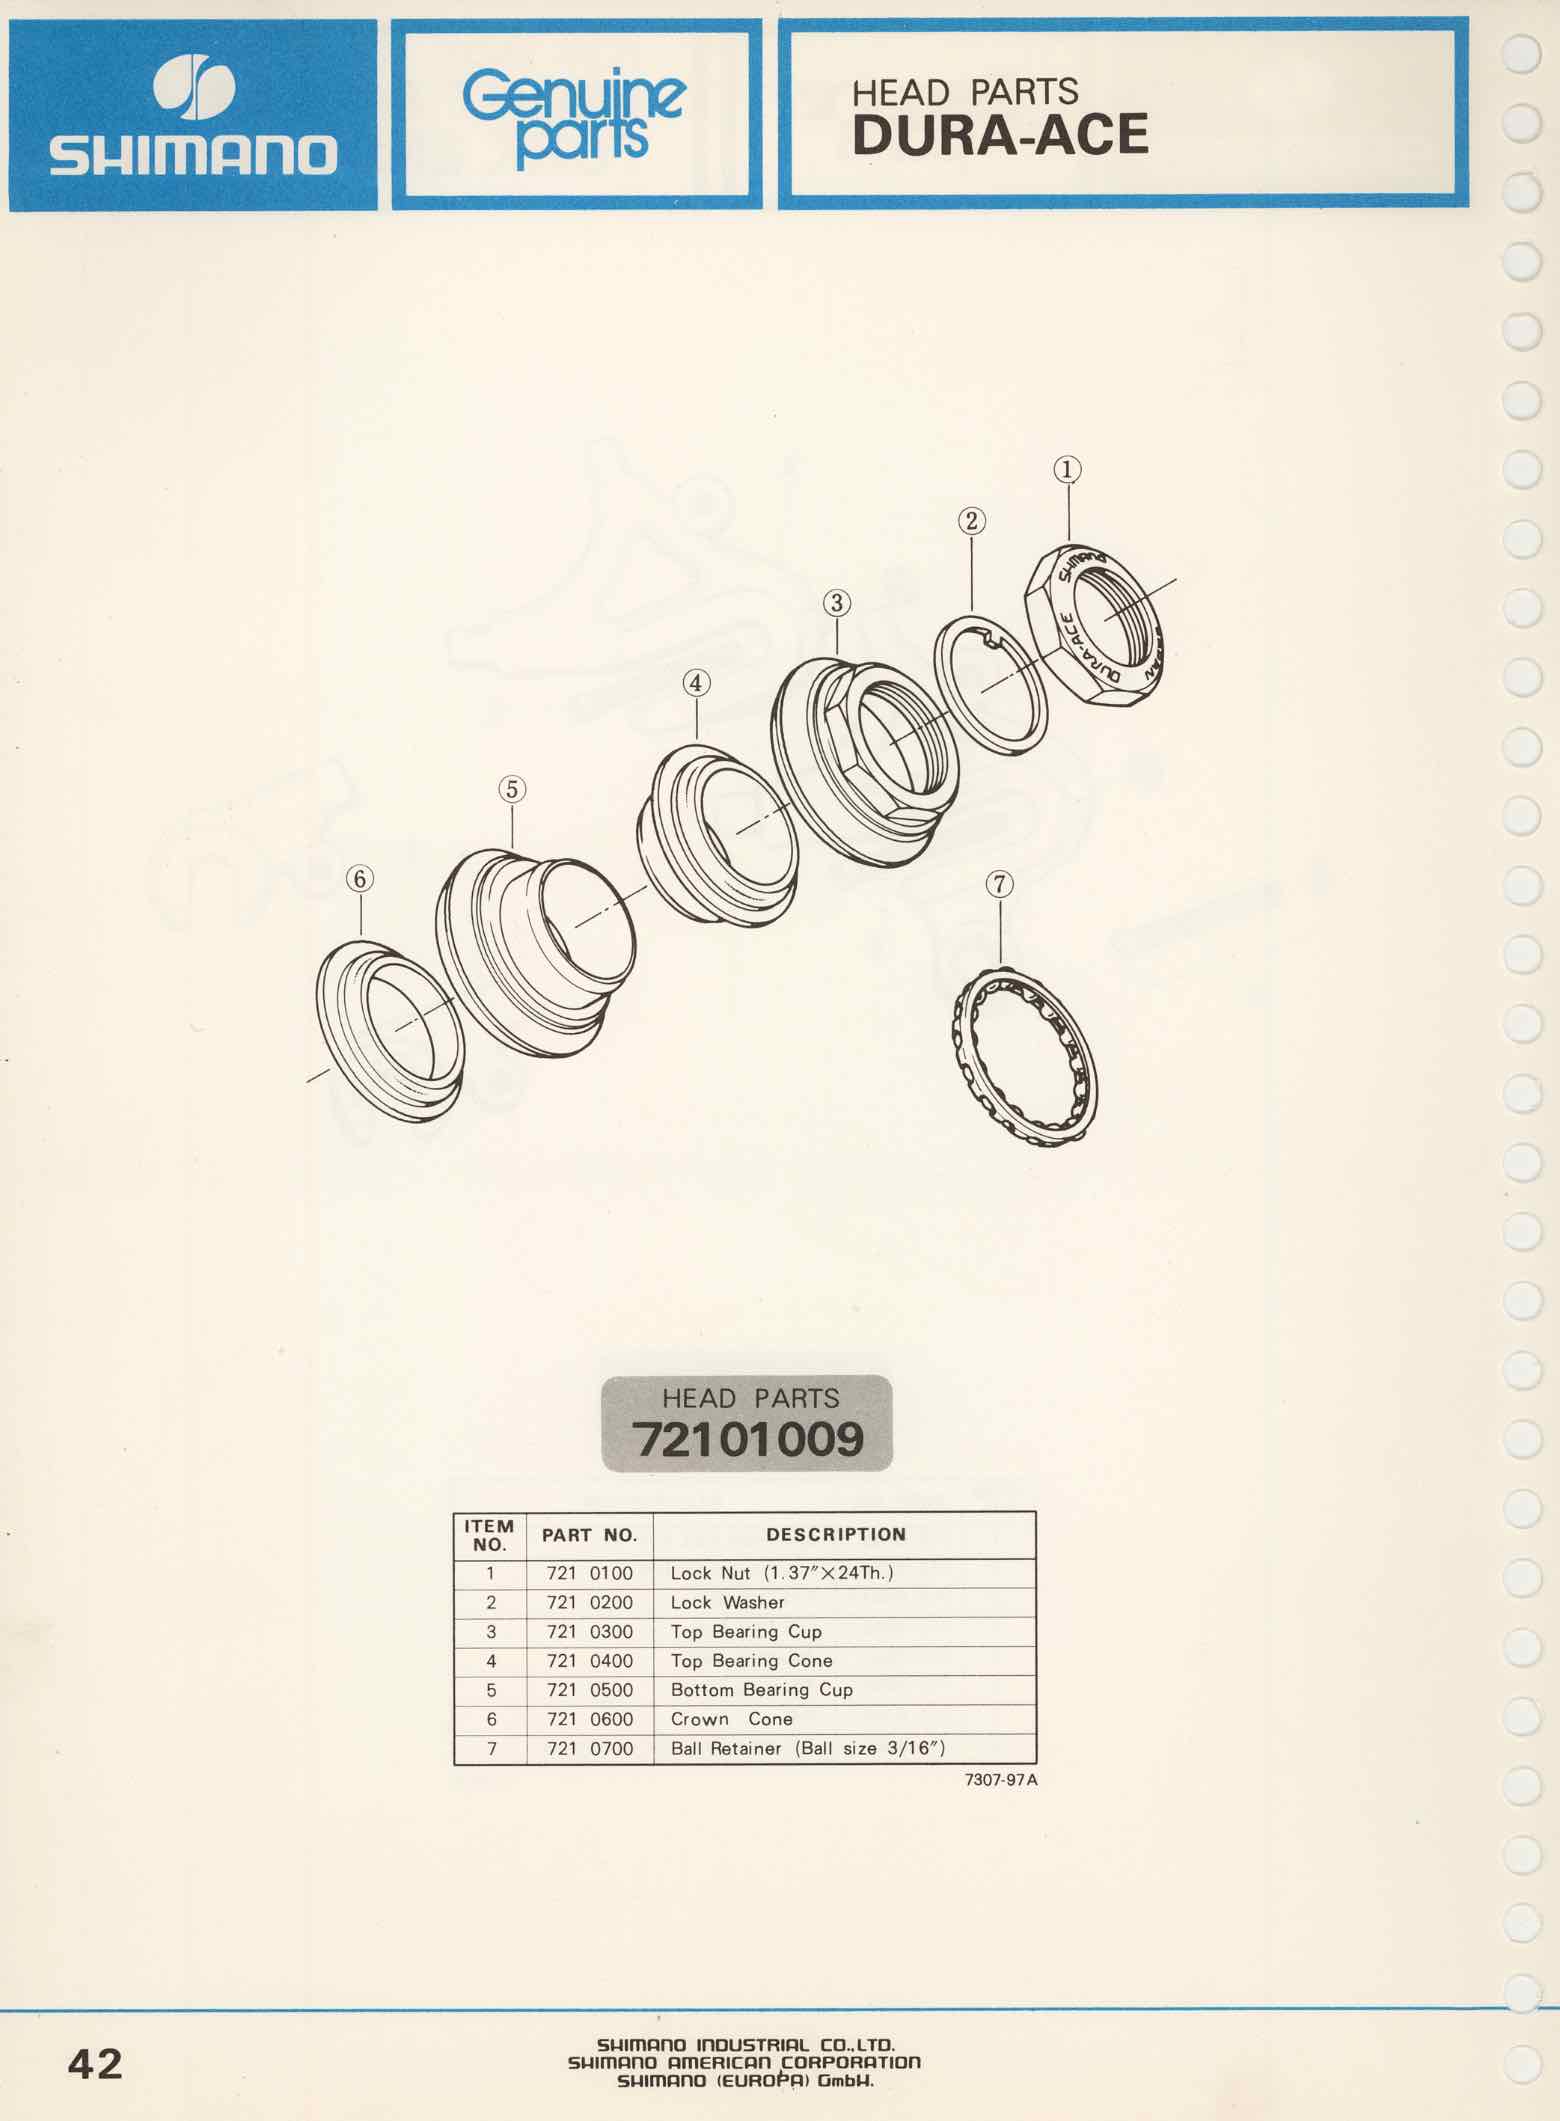 Shimano Bicycle Parts Catalog - 1973 page 42 main image